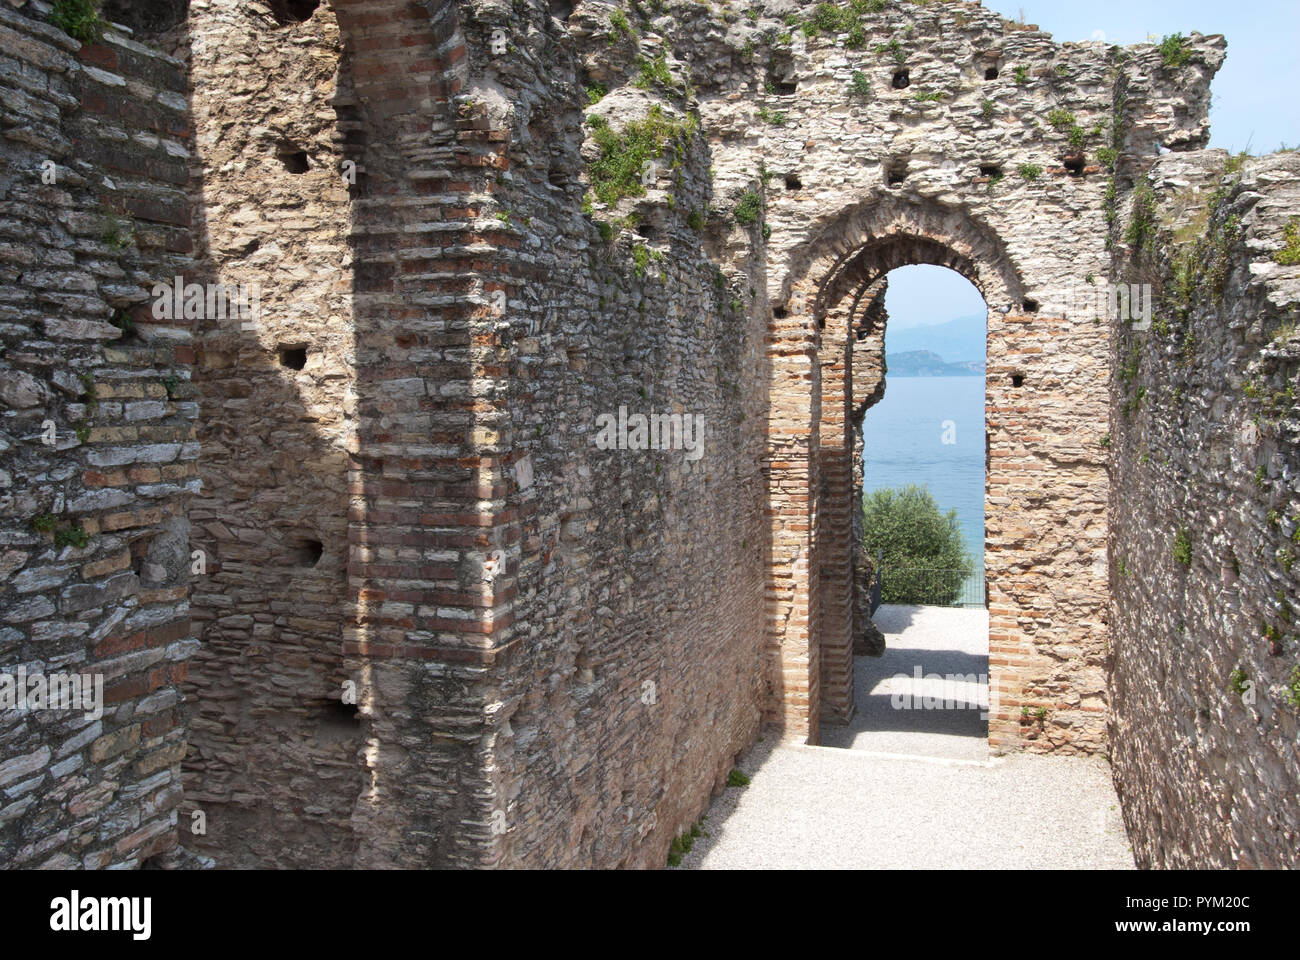 Ruinas Romanas en el sitio arqueológico de la península de Sirmione, el Lago de Garda, Italia Foto de stock